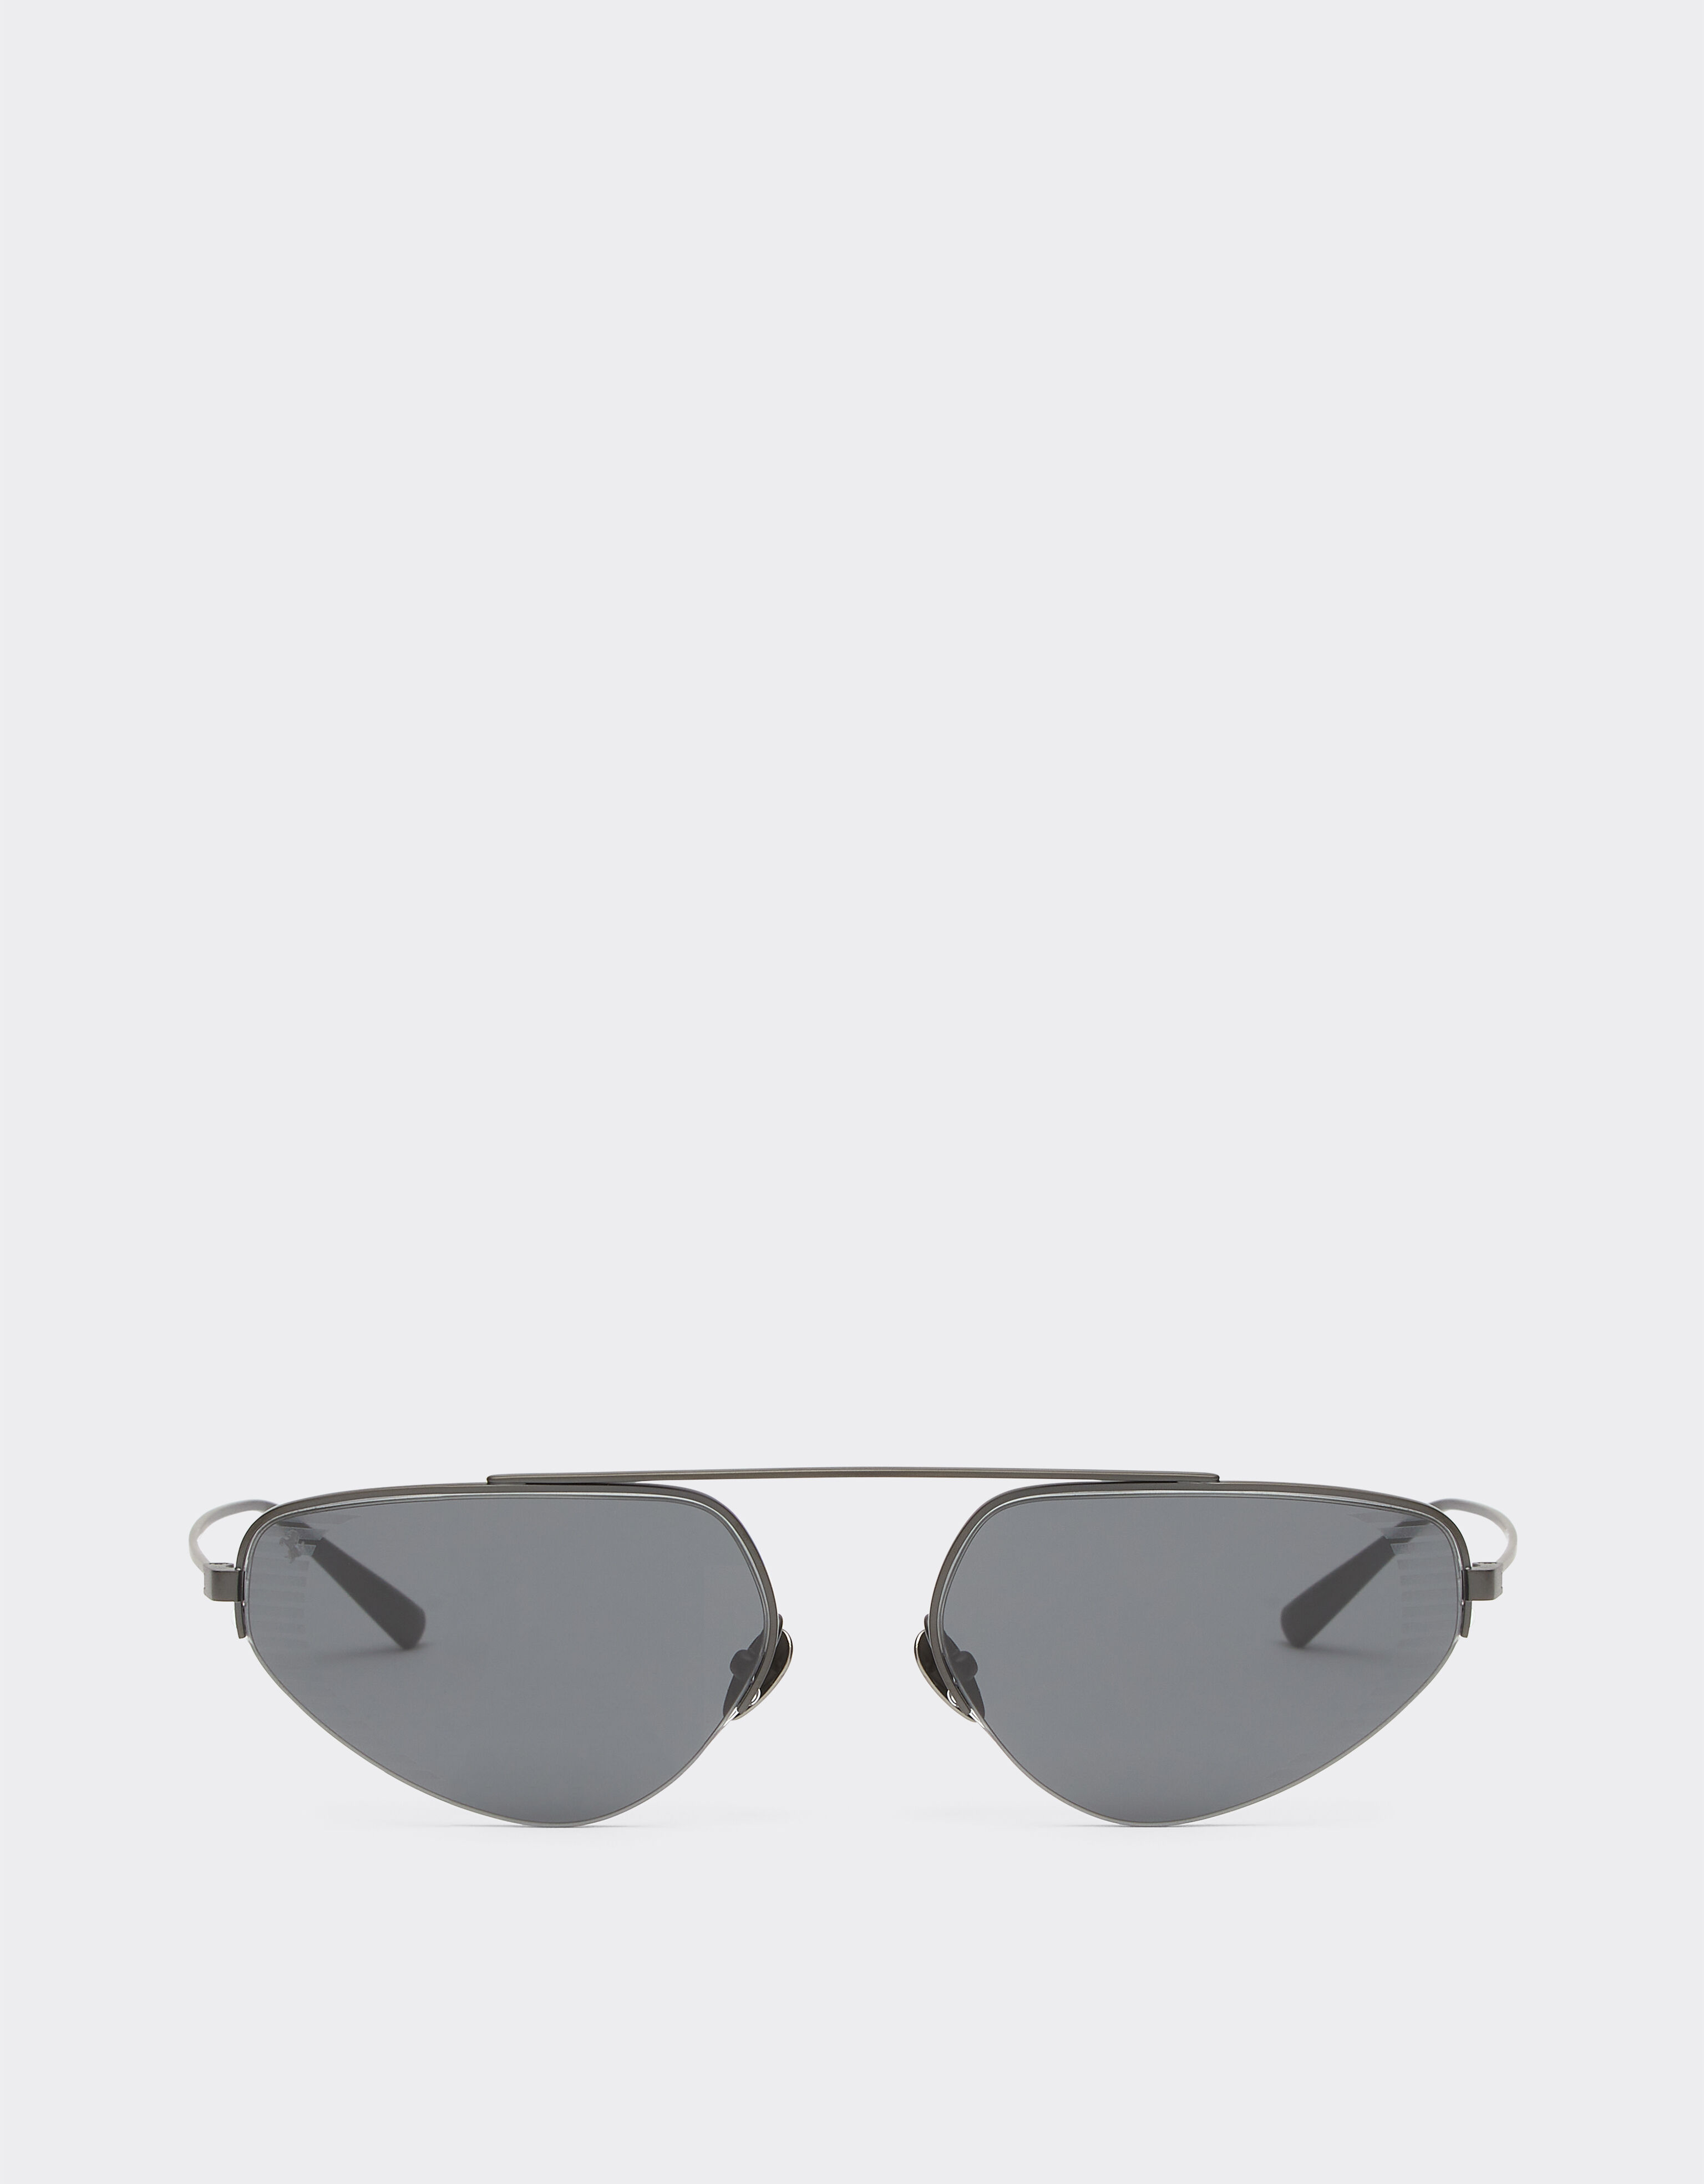 Ferrari Ferrari sunglasses in black titanium with pink lenses Black Matt F1250f